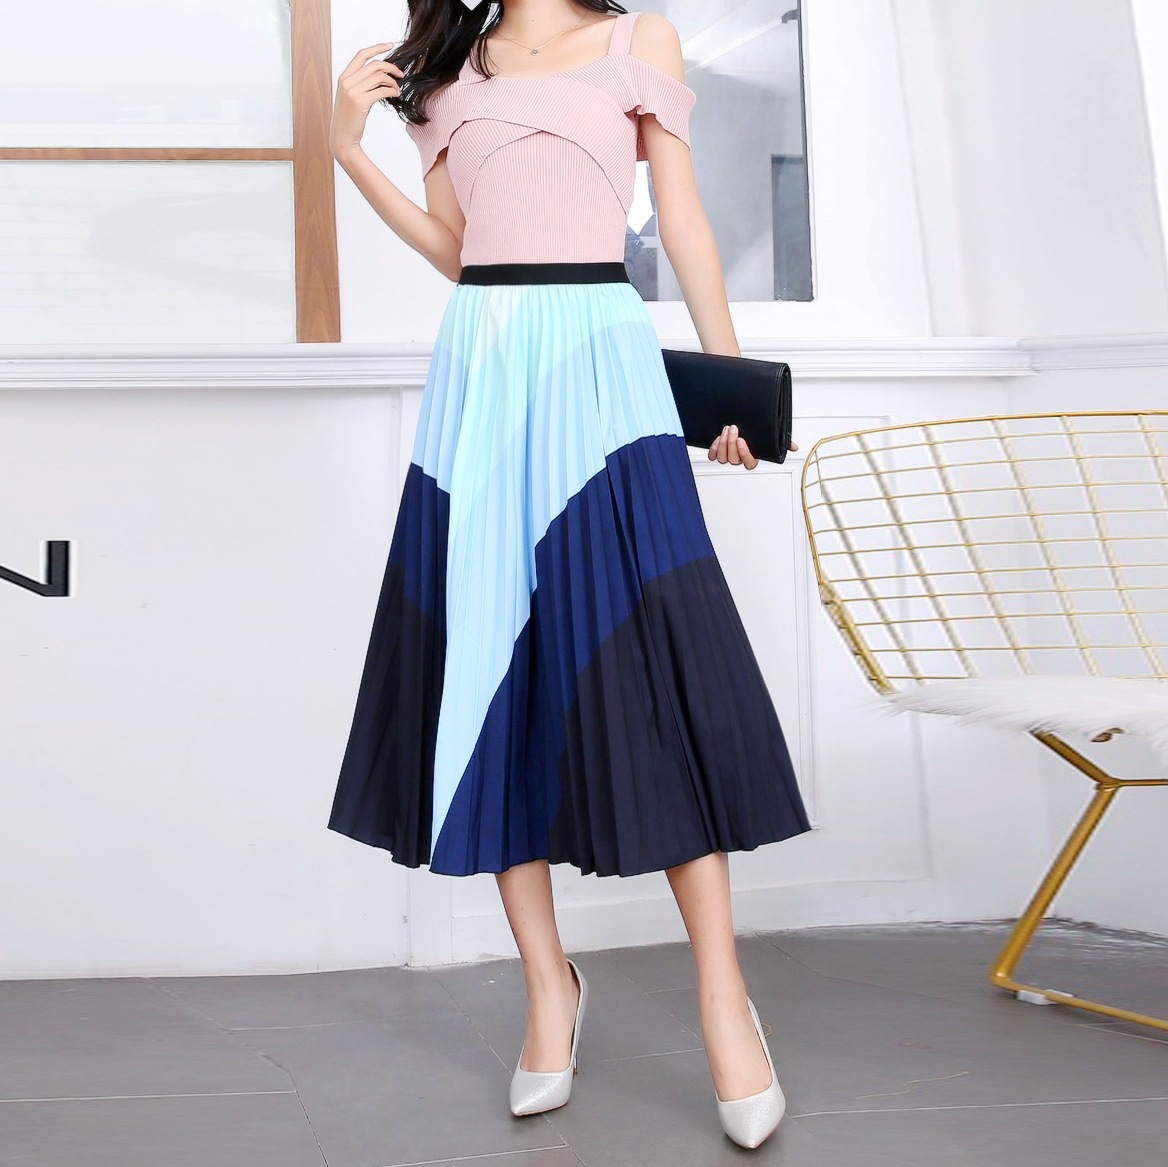 New Type Skirt Women's Dress  Elastic Waist Pleated Skirt Printed Medium Length Half Skirt Pleated Large Swing A-line Skirt